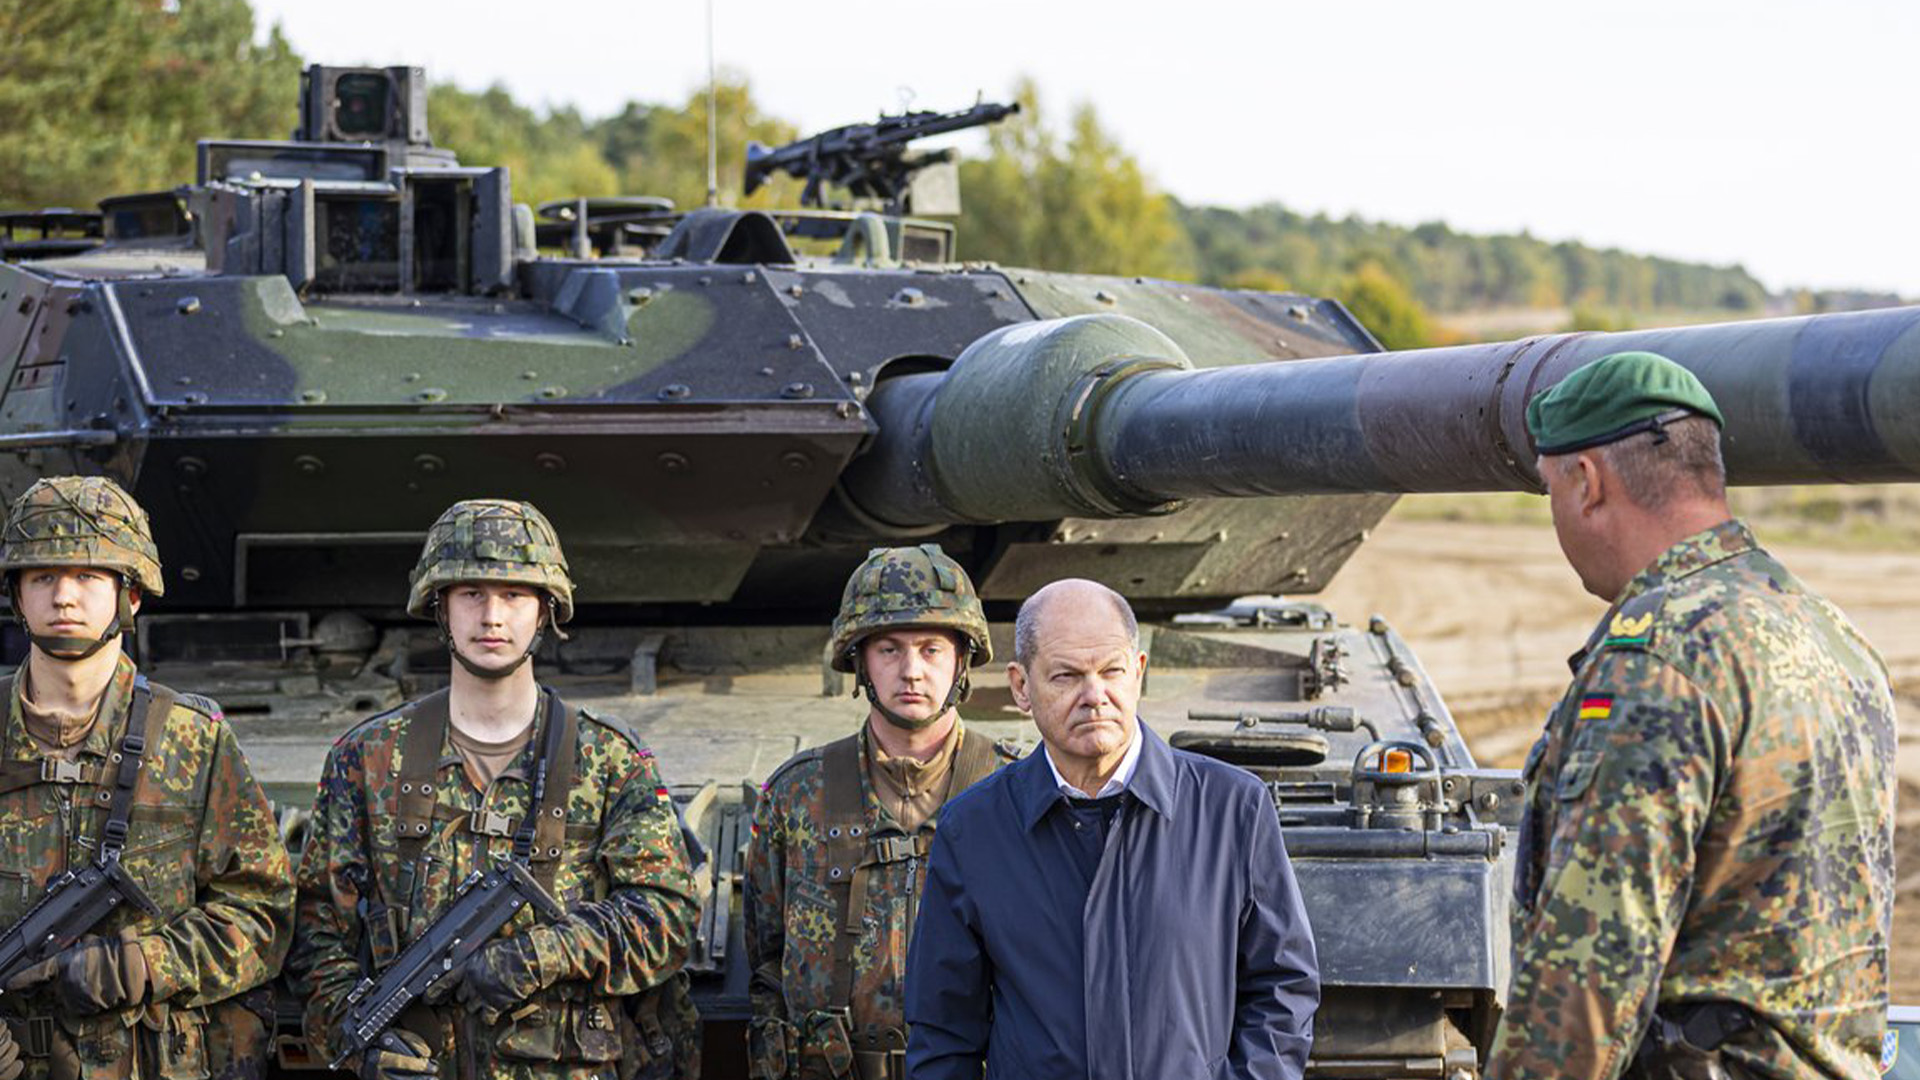 Le chancelier allemand Olaf Scholz se tient aux côtés de soldats de l'armée allemande de la Bundeswehr devant un char de combat principal "Leopard 2" lors d'un exercice d'entraînement et d'instruction à Ostenholz, en Allemagne, le lundi 17 octobre 2022. Scholz devrait annoncer mercredi 25 janvier 2023 que son gouvernement approuvera la fourniture de chars de combat de fabrication allemande à l'Ukraine.